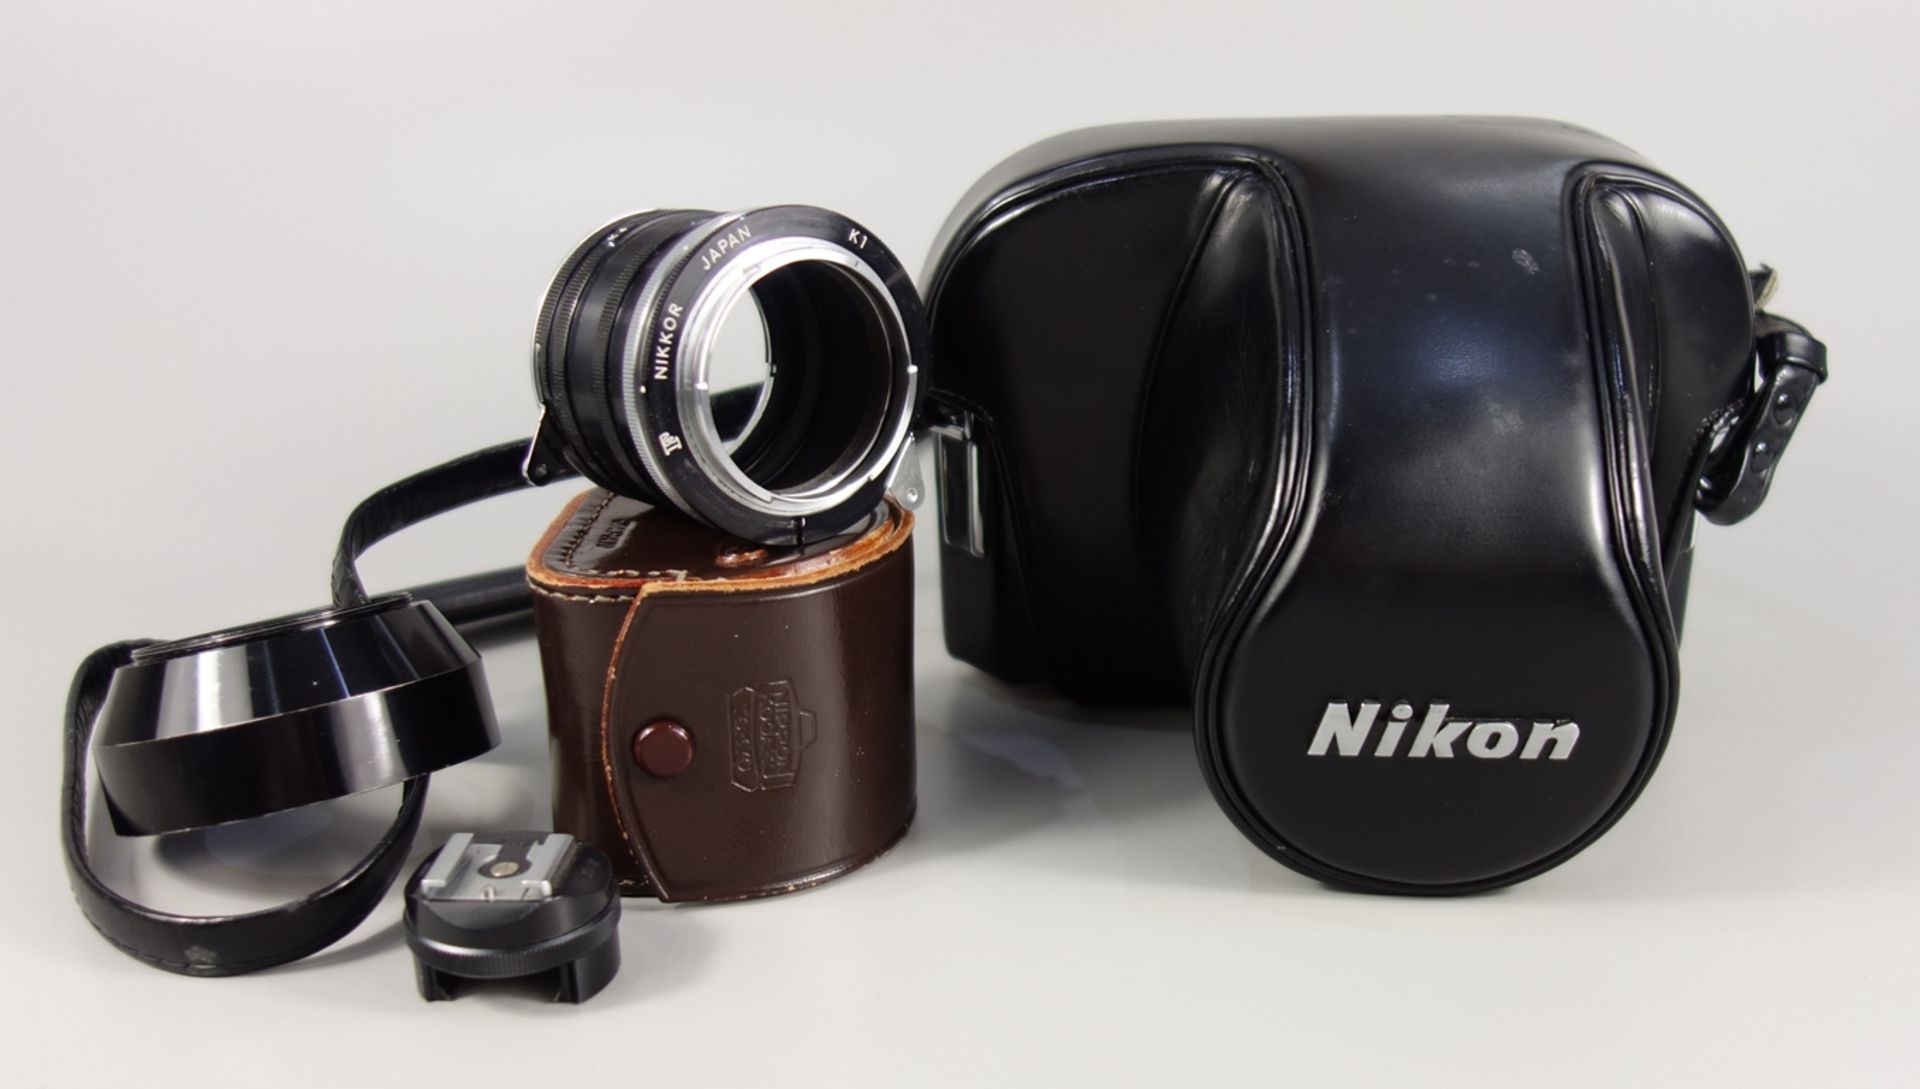 Nikon F2 Photomic, Spiegelreflexkamera, schwarz, 1970er Jahre, Serien-Nr. 7240495, mit Objektiv - Image 5 of 5